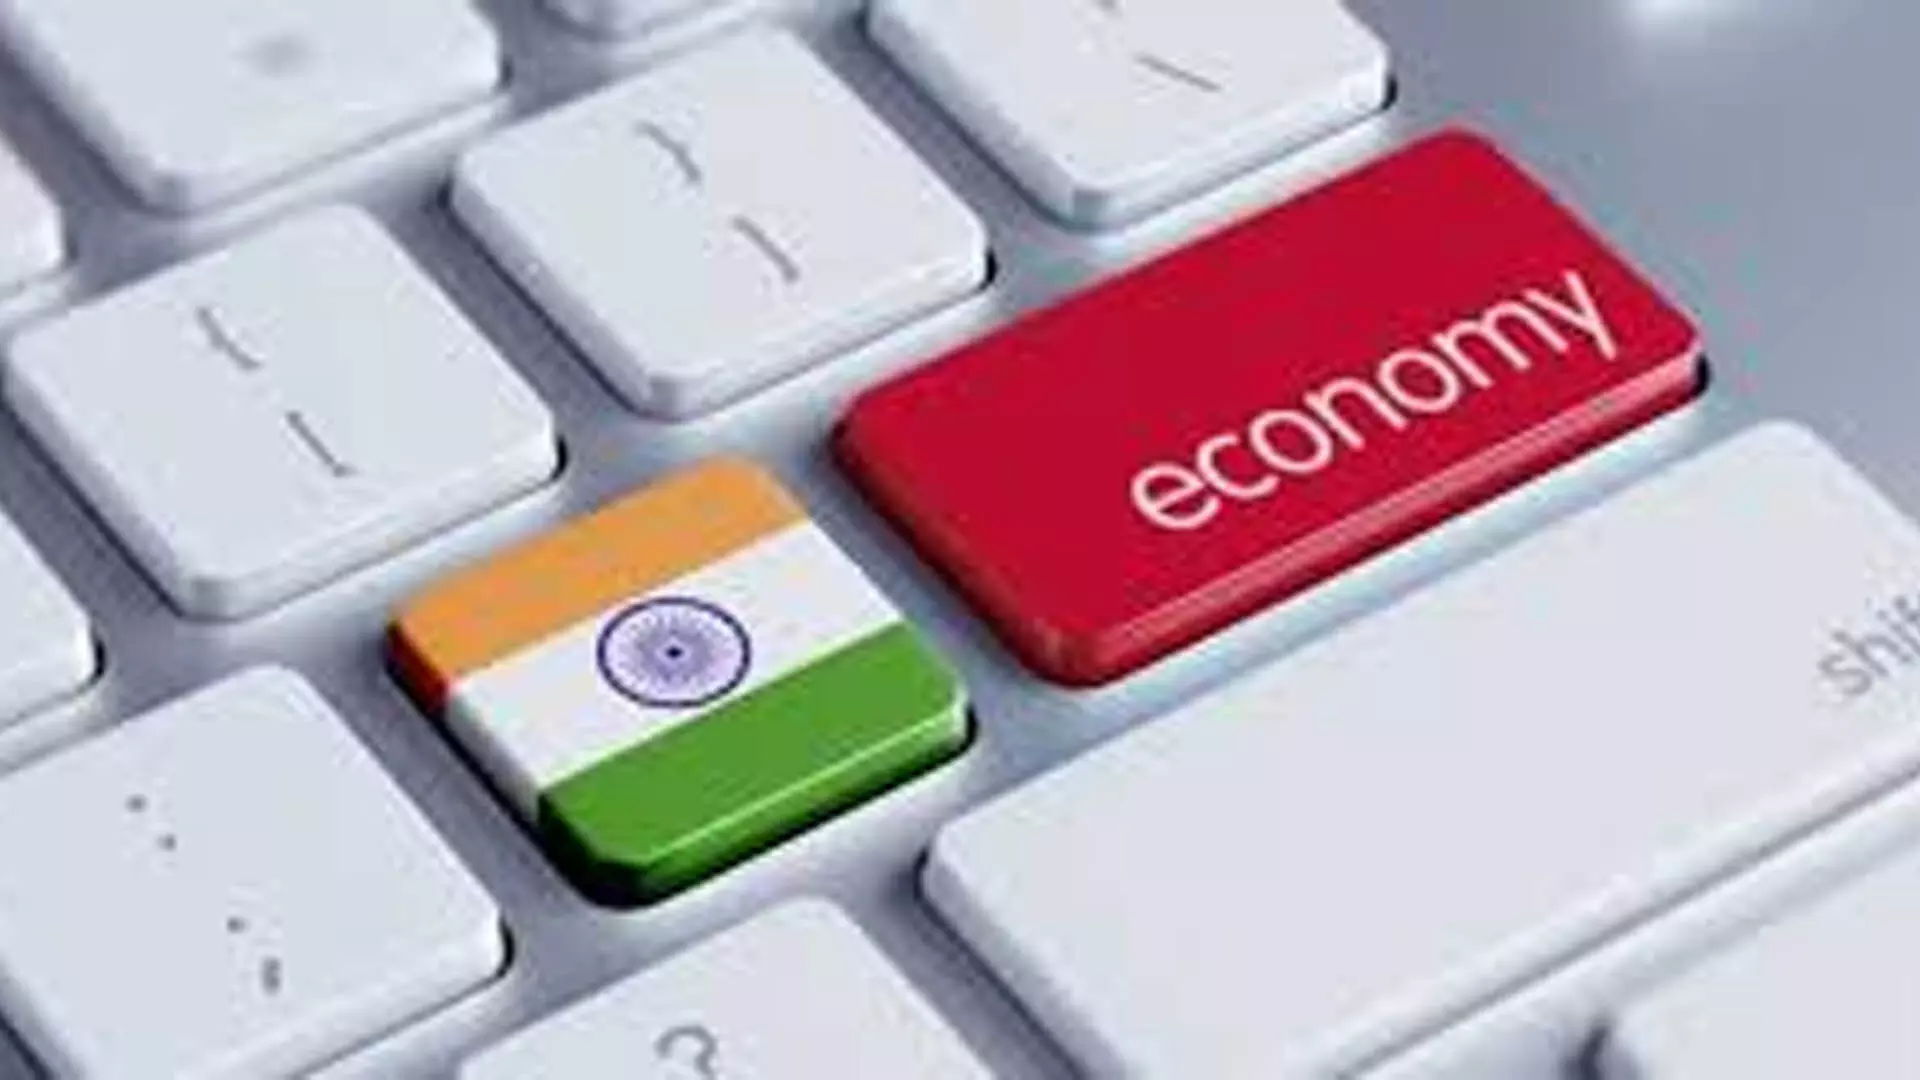 Delhi News: भारतीय अर्थव्यवस्था में निरंतर वृद्धि की संभावना आईटीसी वार्षिक रिपोर्ट